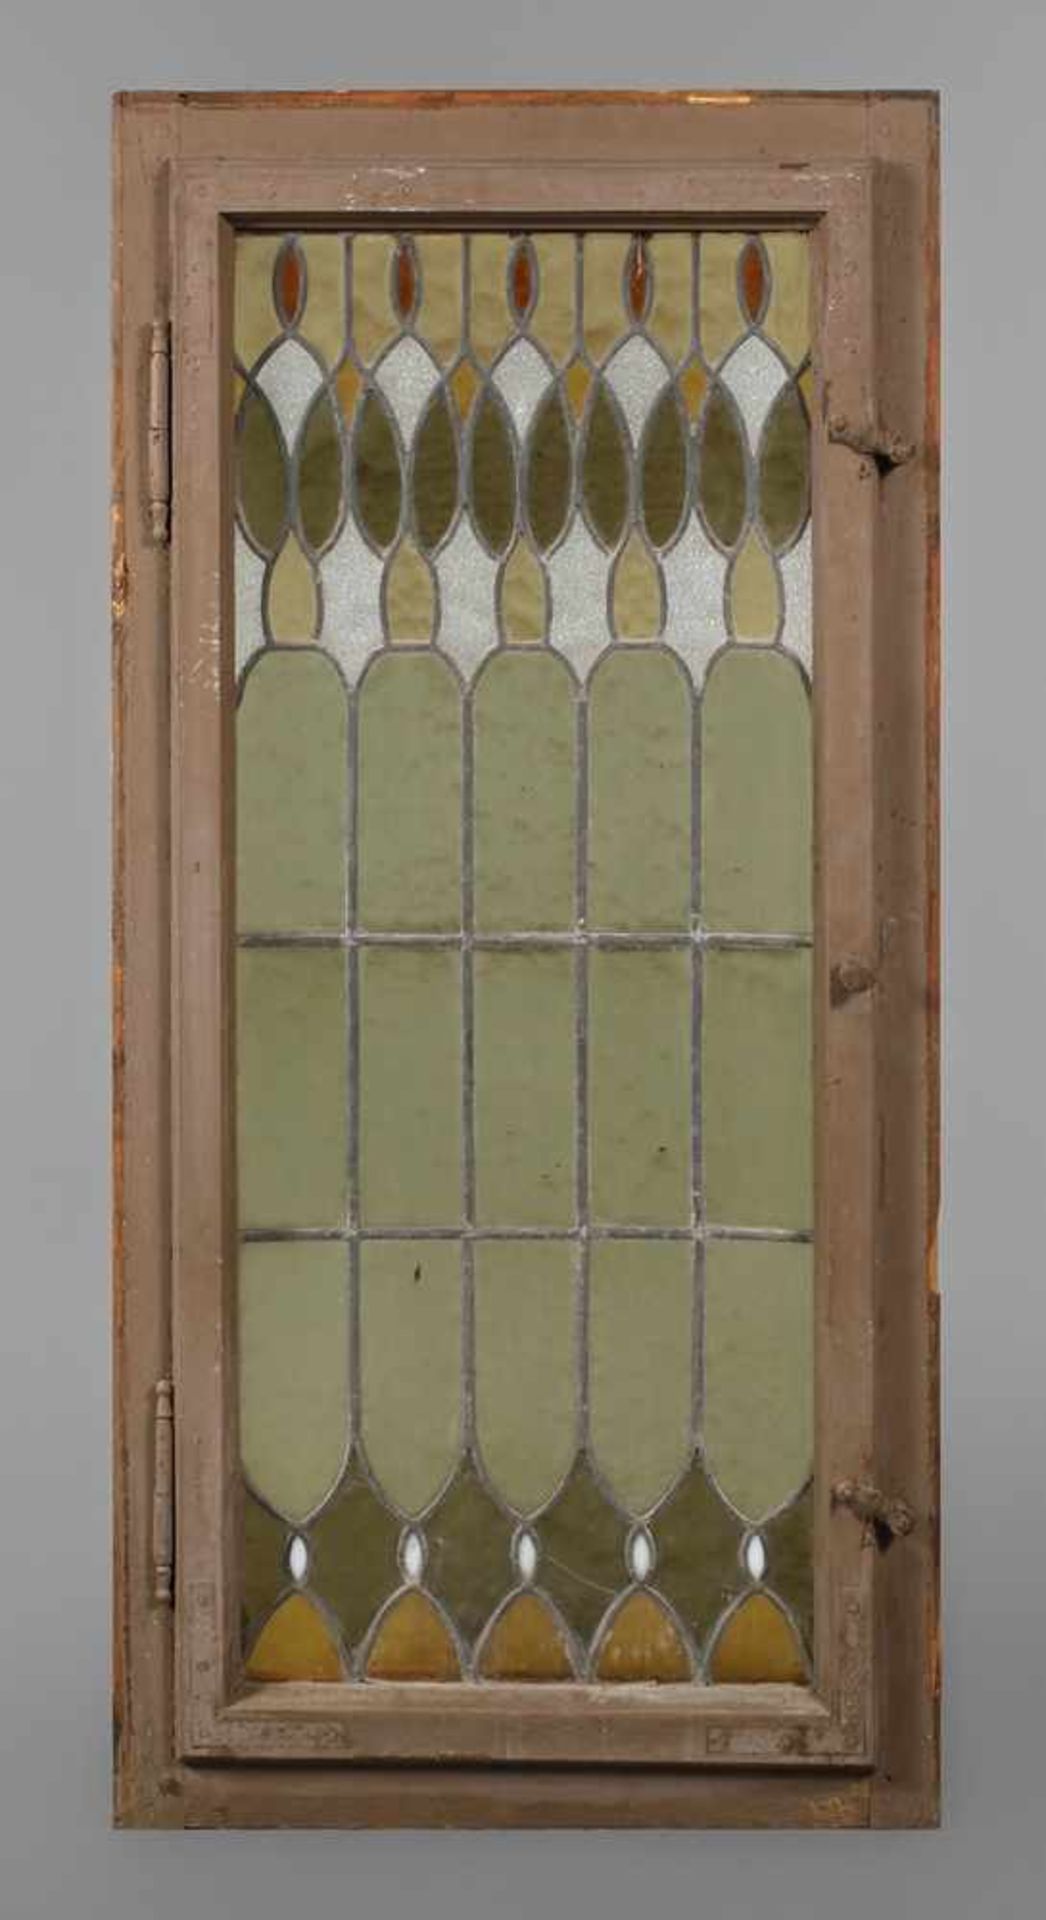 Bleiglasfensterum 1900, ornamentaler Dekor aus Farbglas, im originalen Rahmen mit Zarge, Maße 108